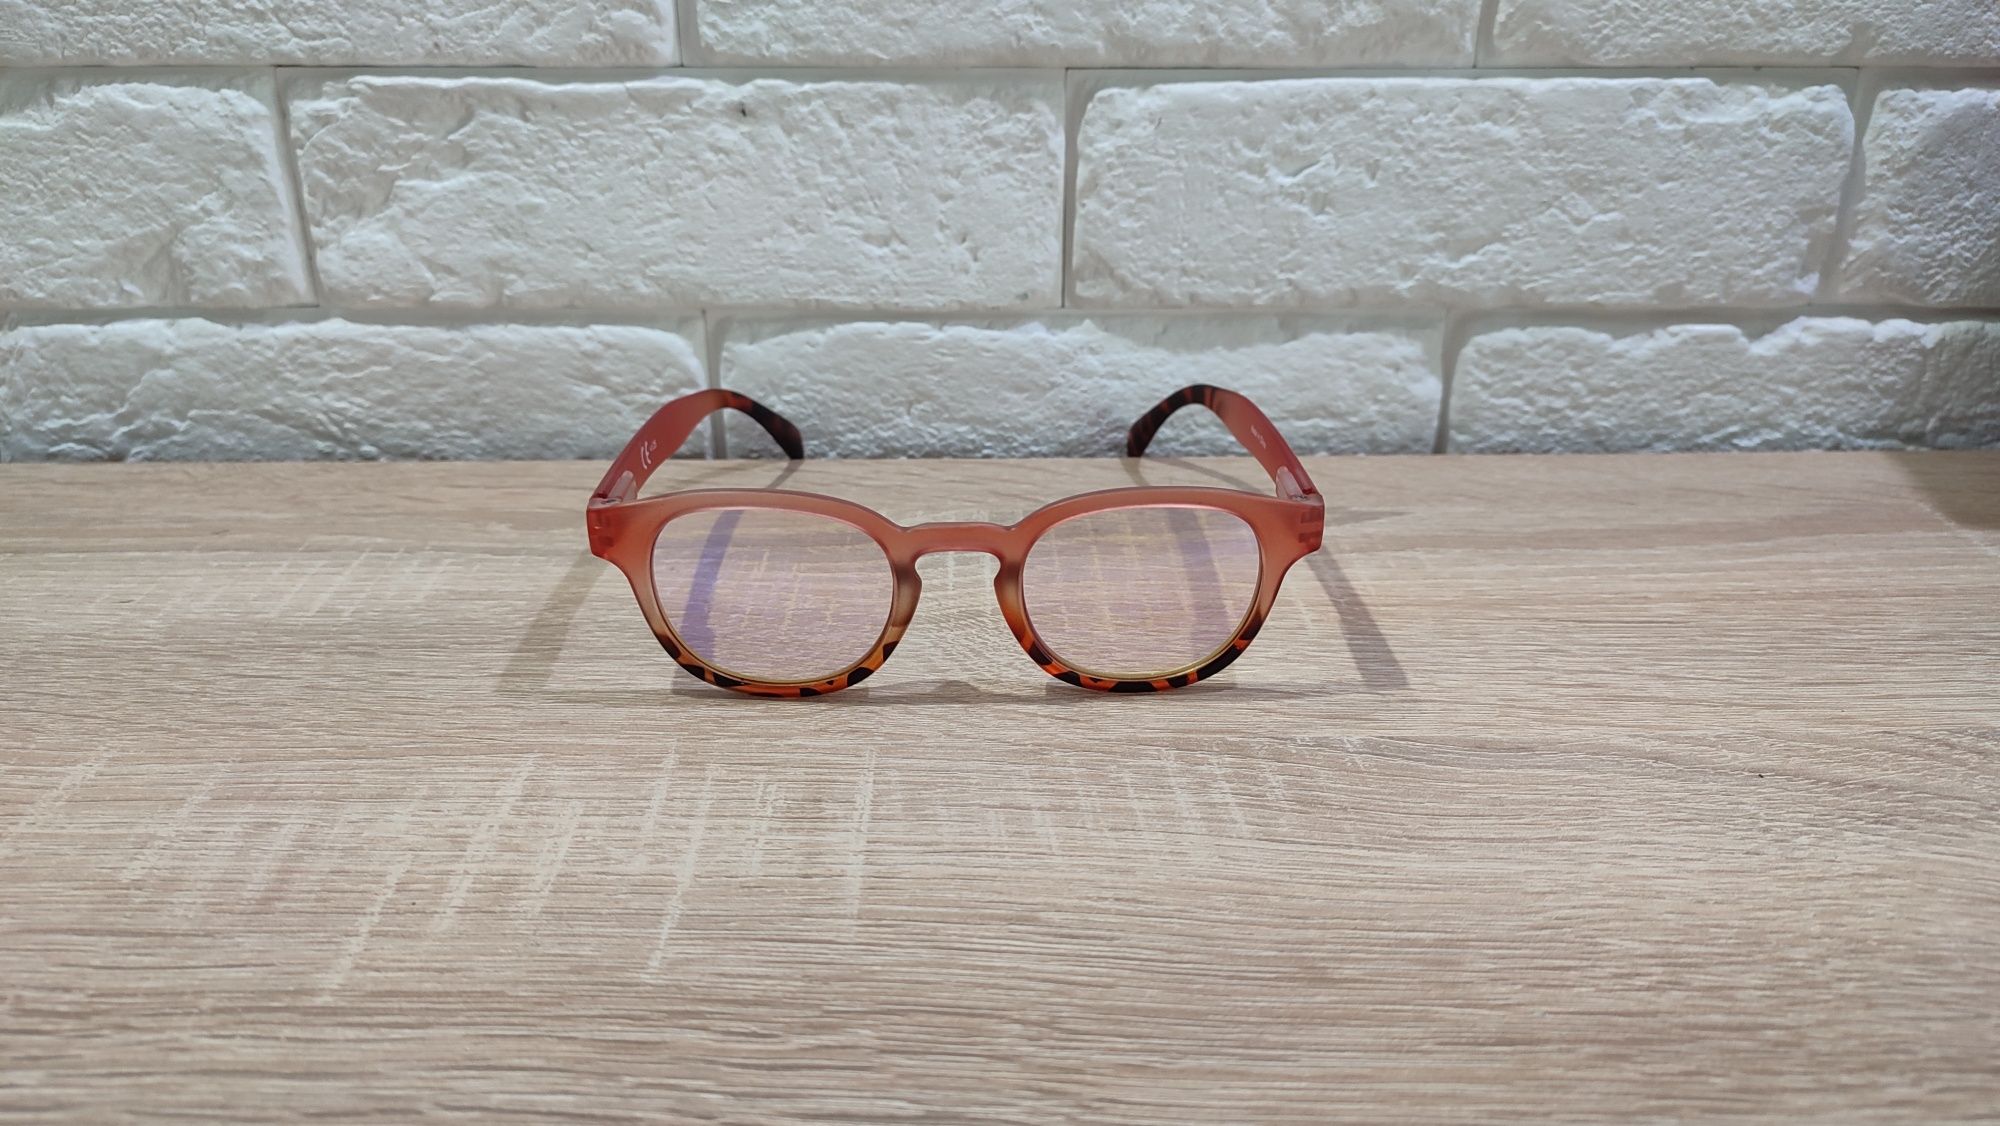 HIT Solidne okulary przeciwsłoneczne korekcyjne plusy +1.25 z etui